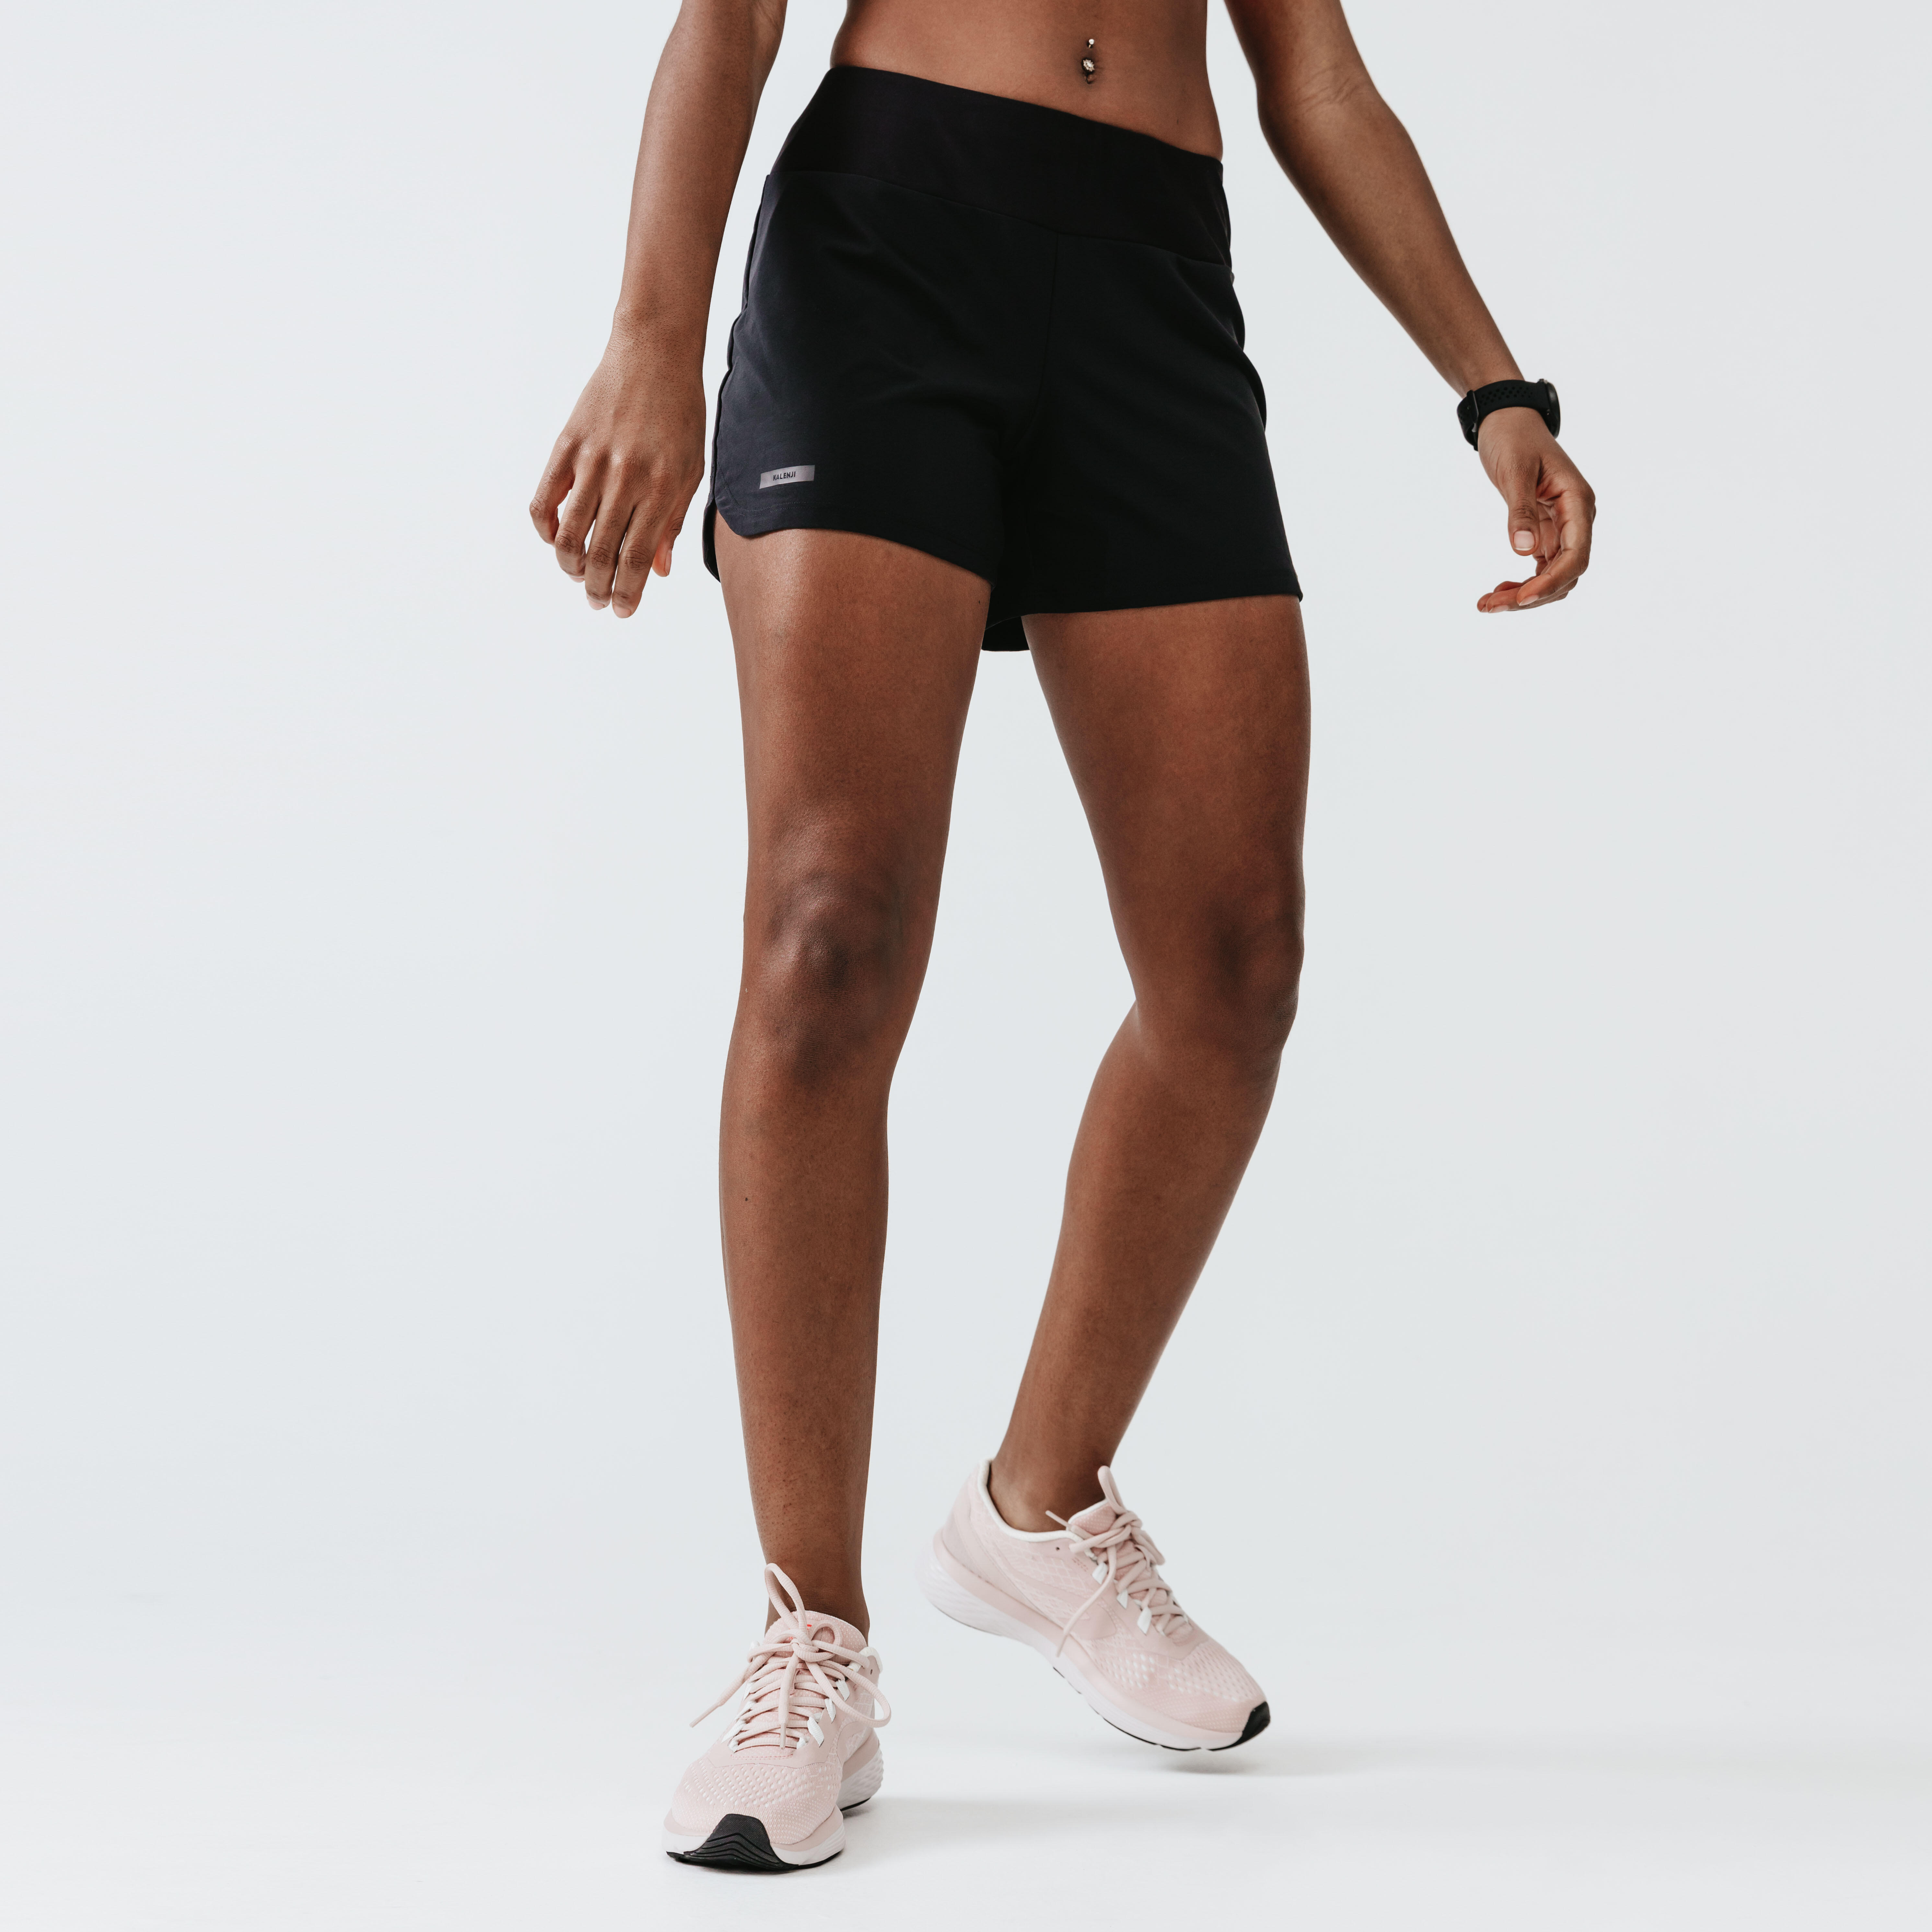 pantalones cortos deporte decathlon mujer Today's Deals - OFF